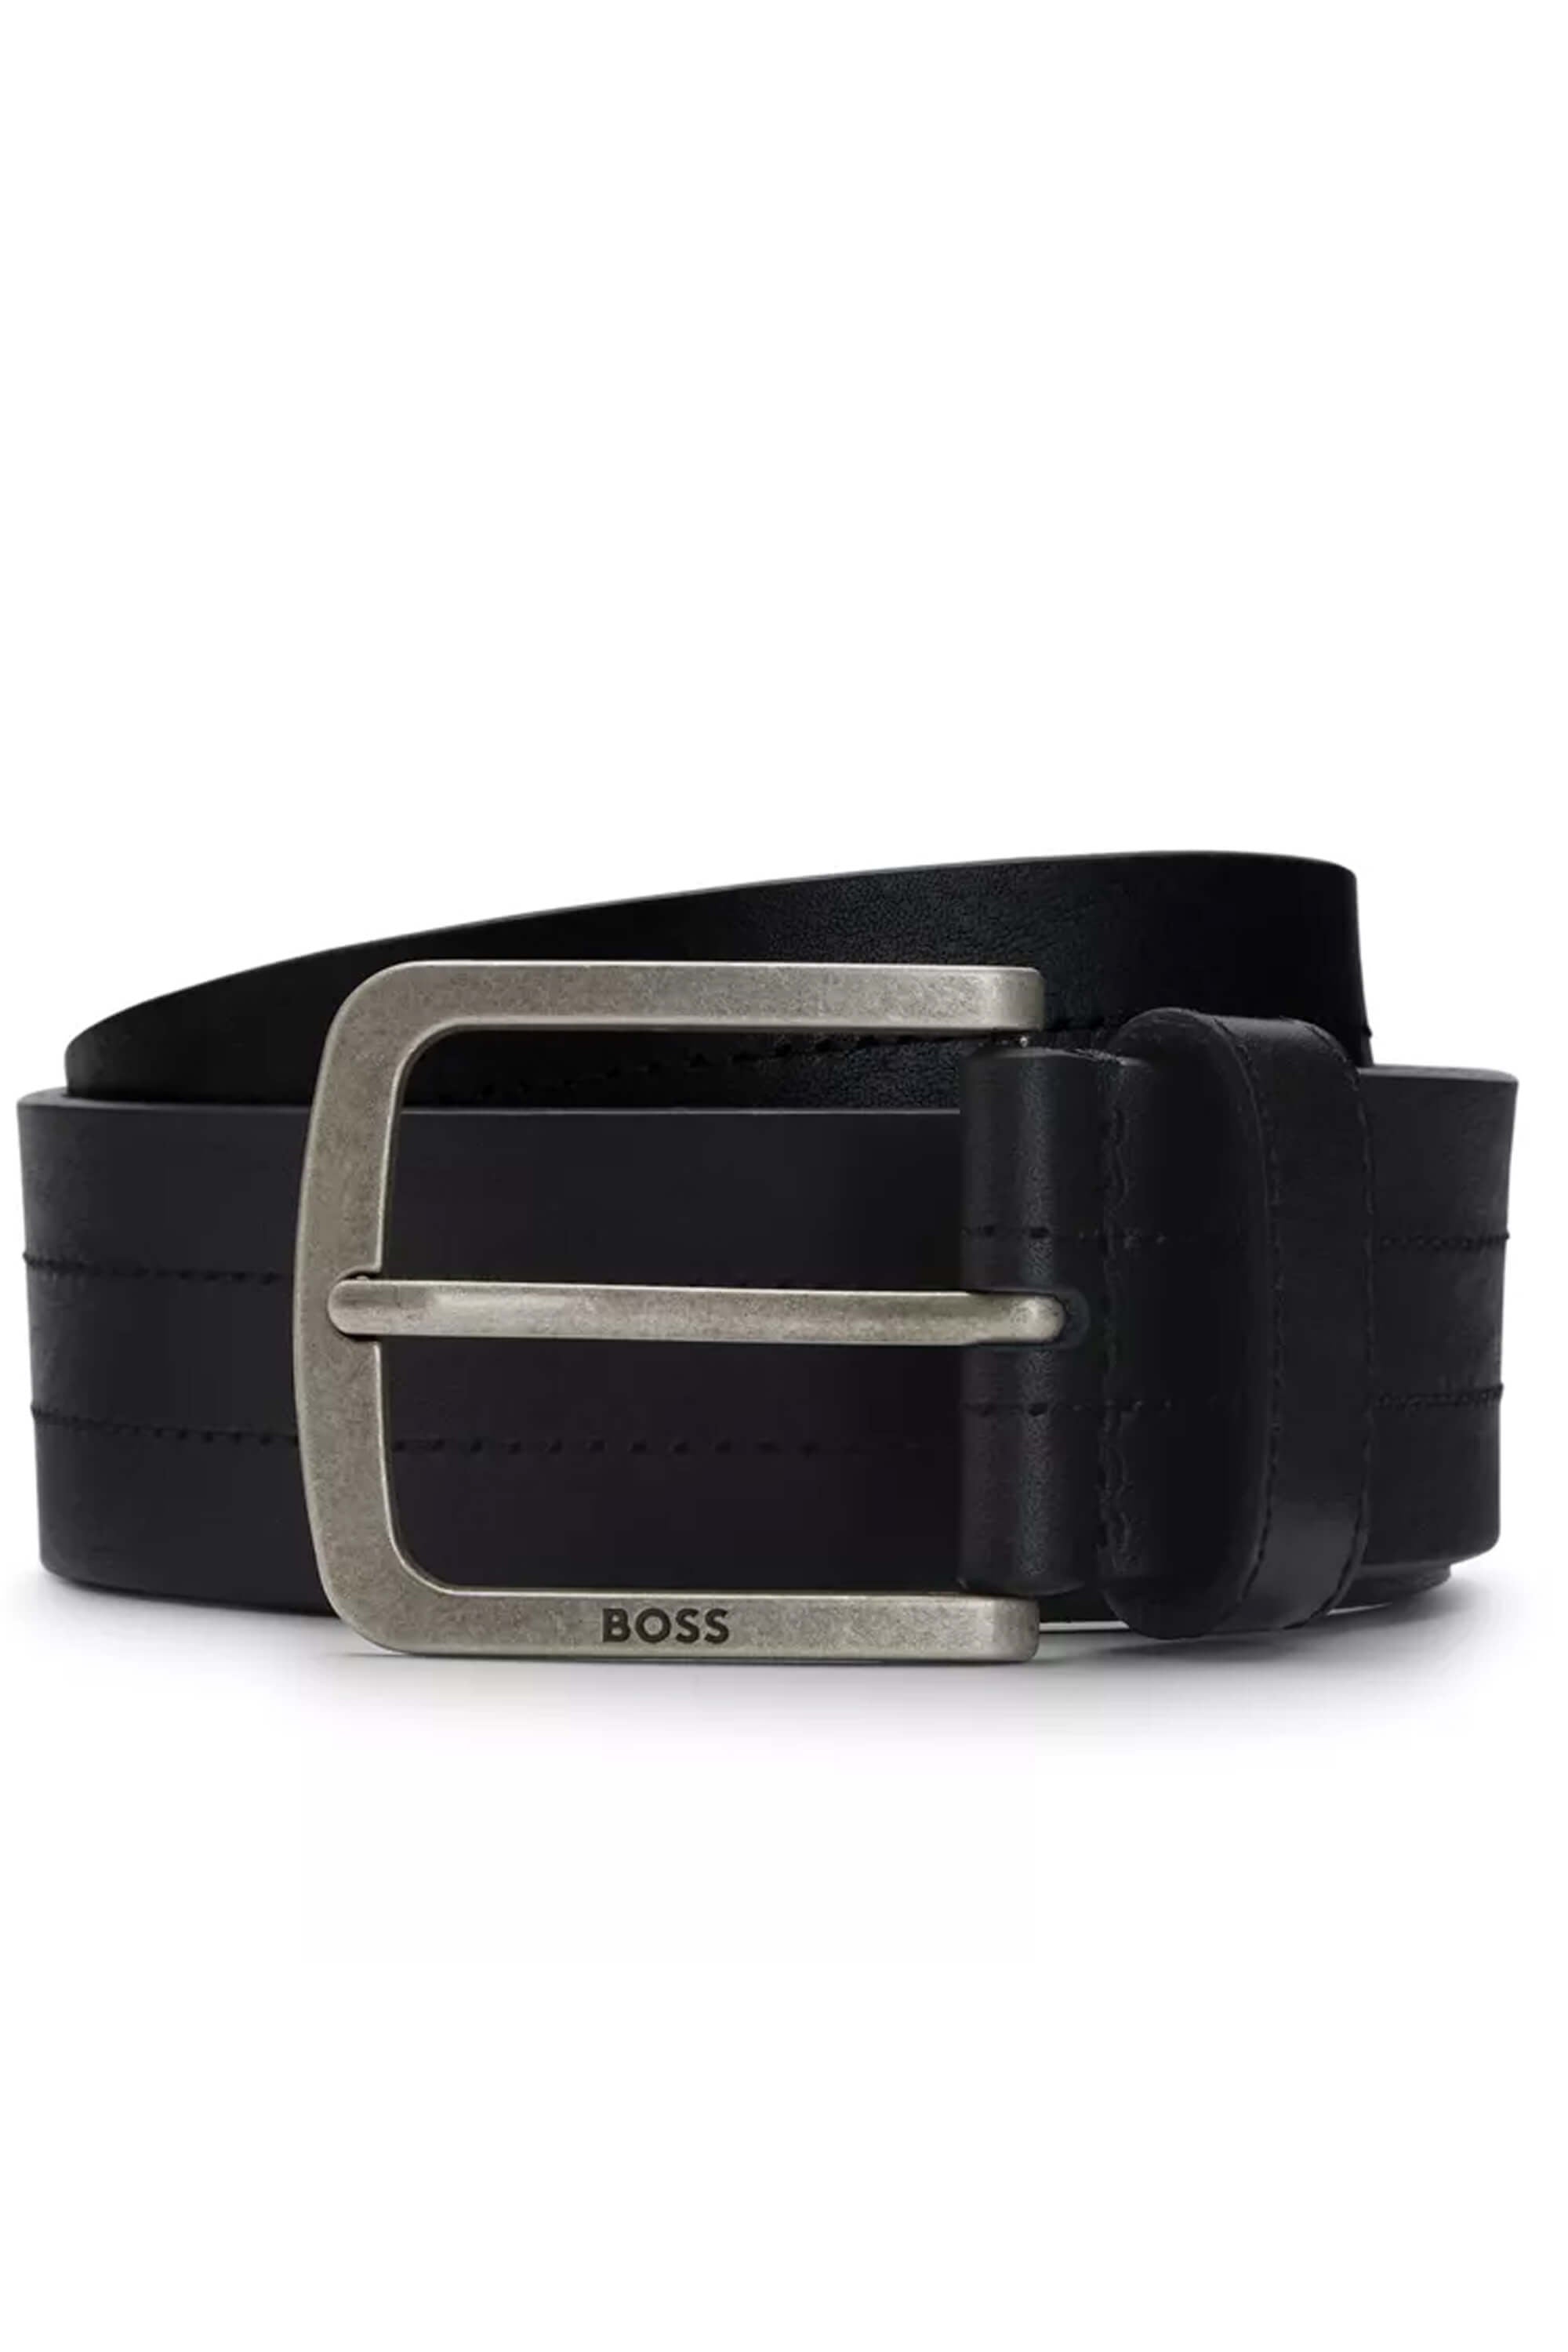 Hugo Boss Jor Belt Black